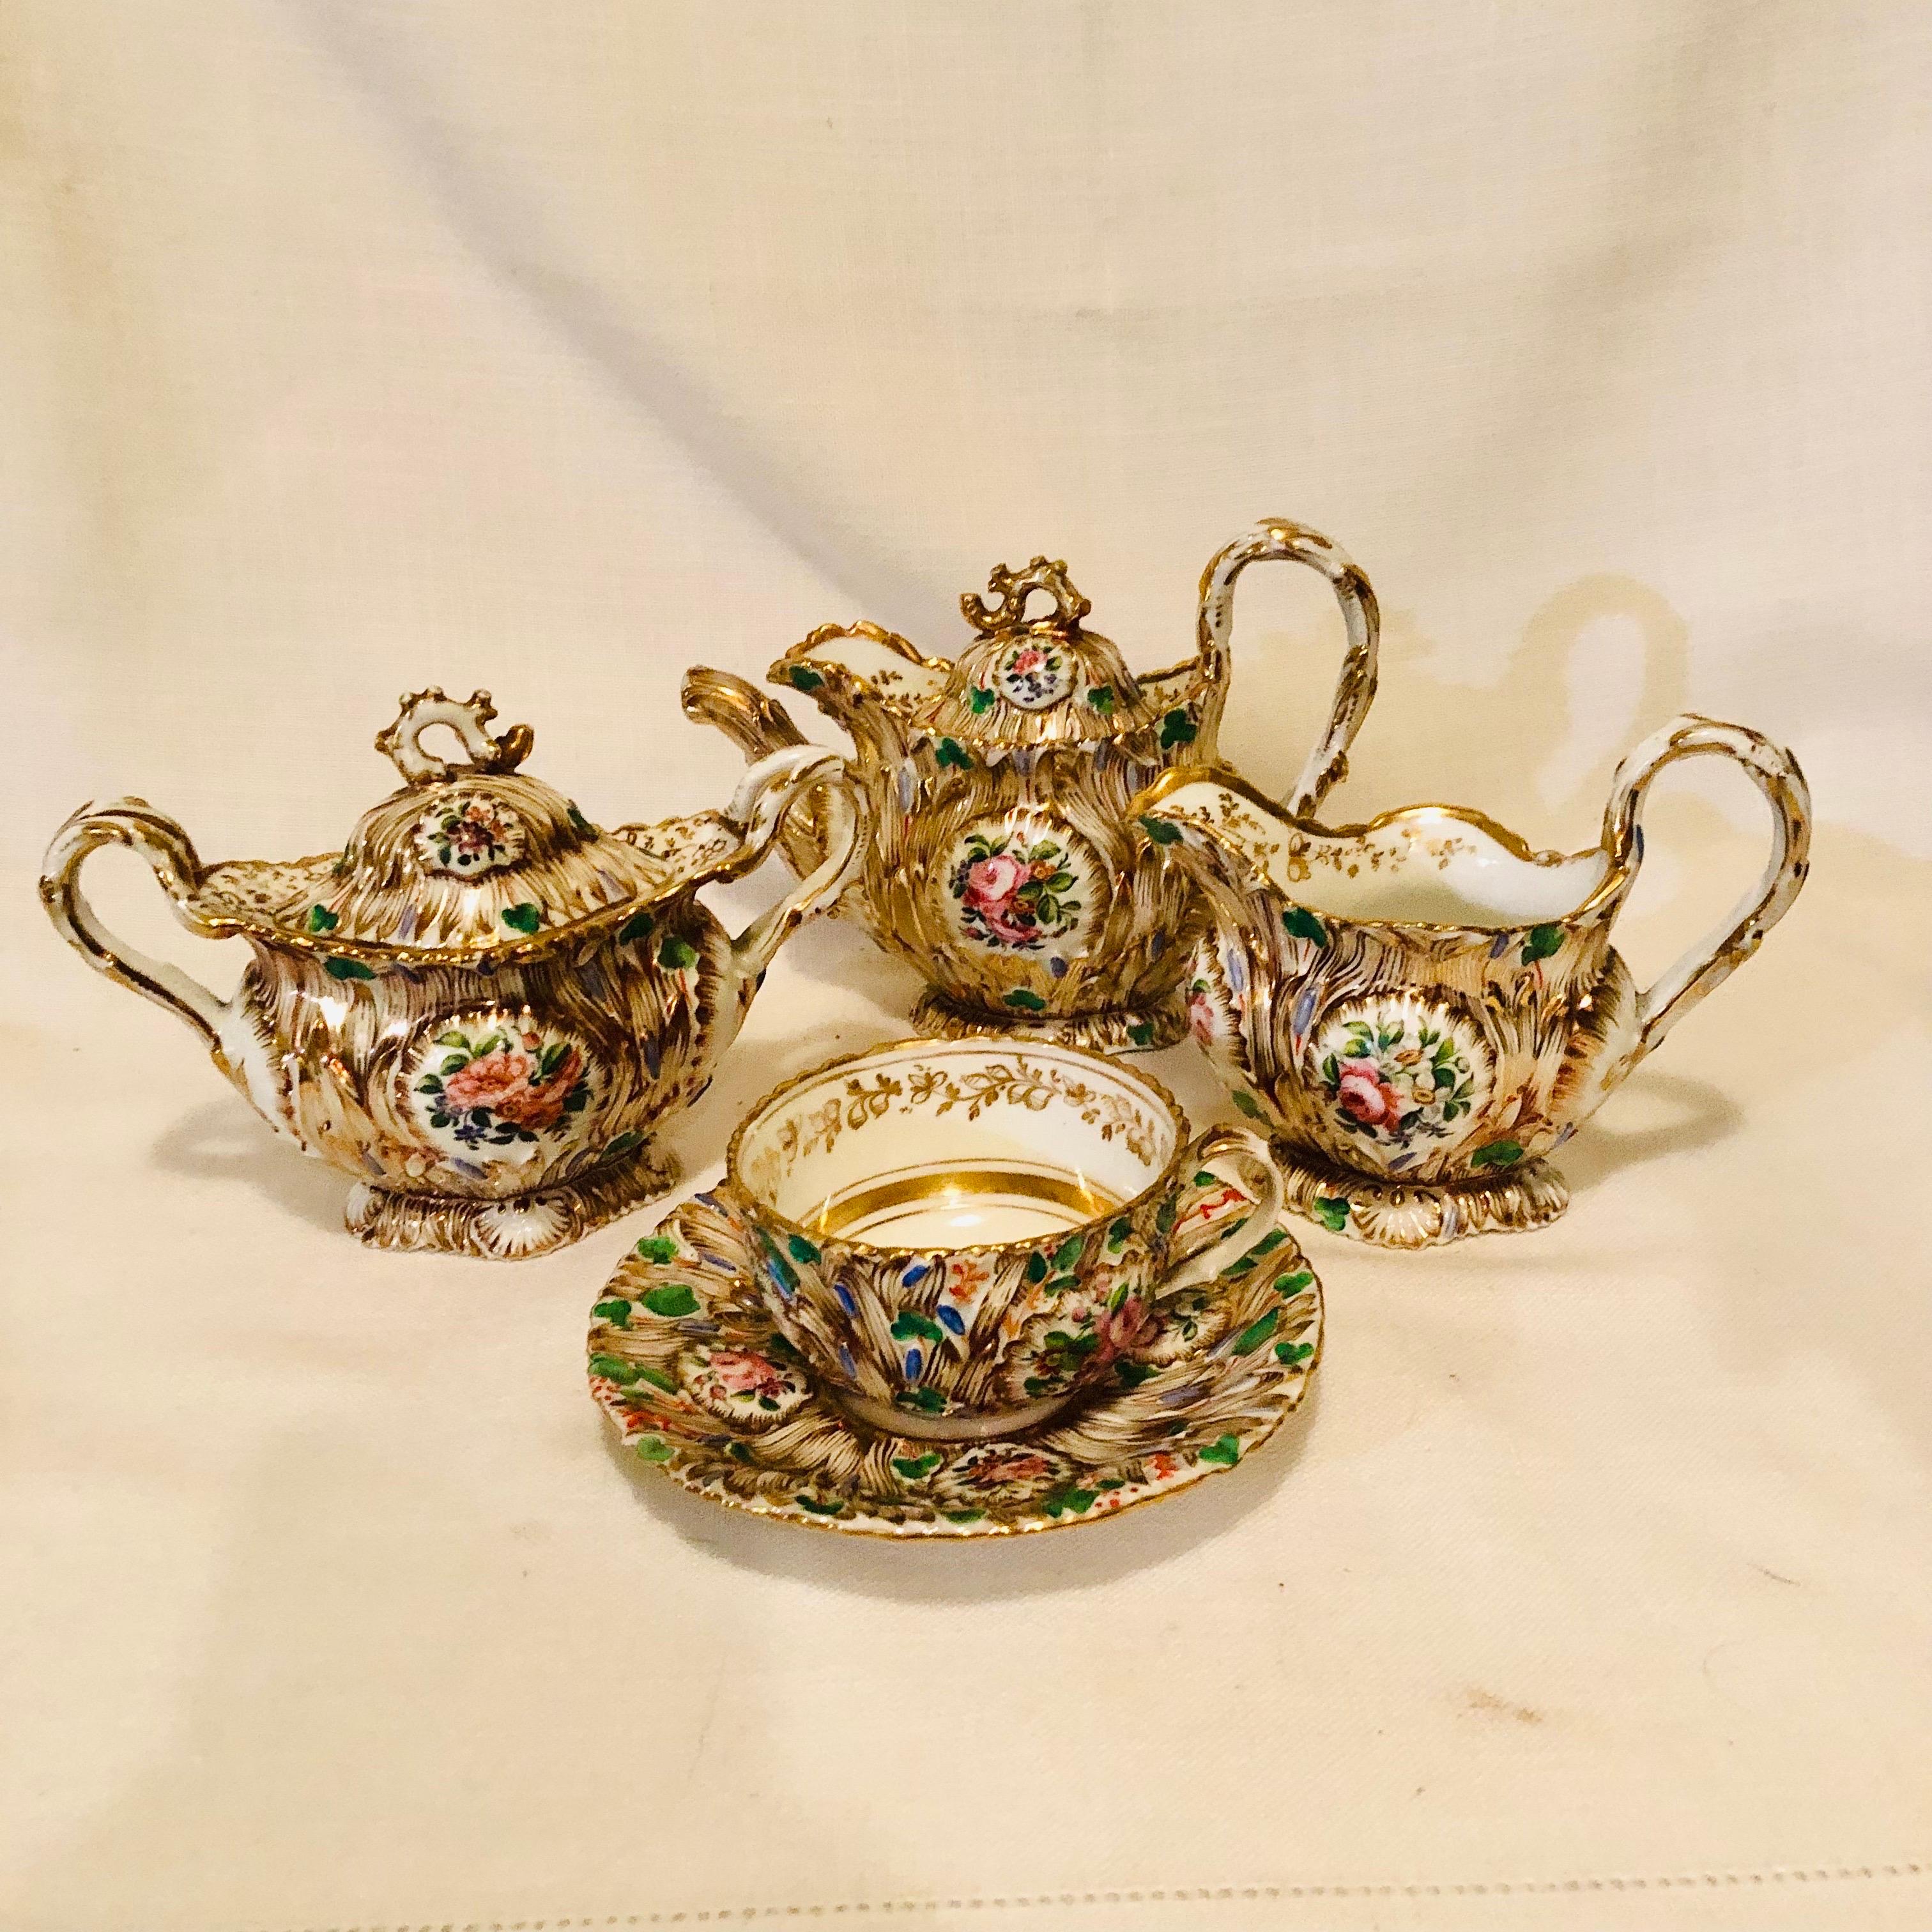 Jacob Petit Paris Porcelain Tea Set with Gilt and Colorful Rococo Decoration For Sale 4